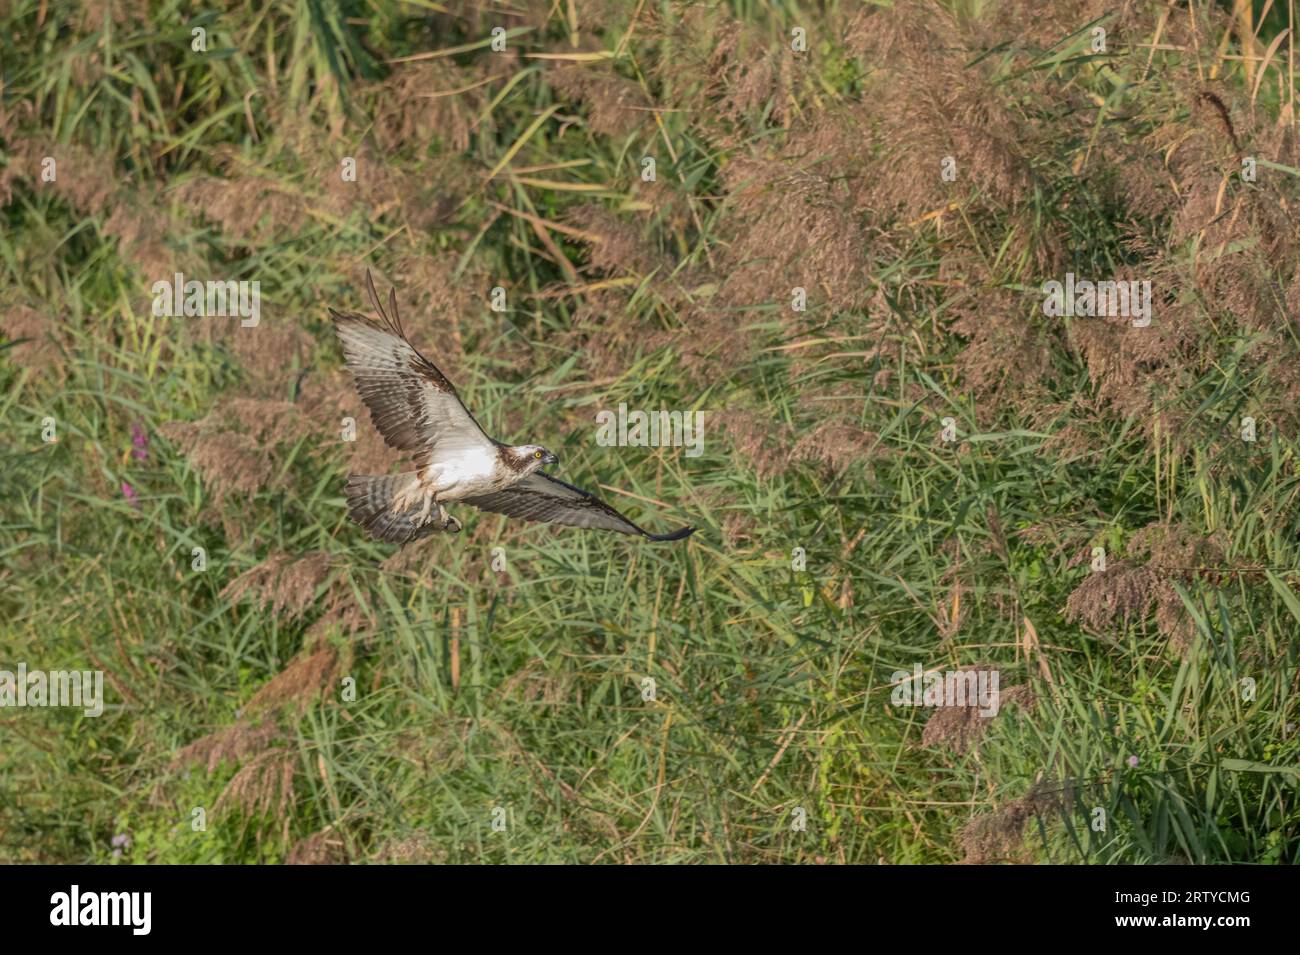 Osprey (Pandion haliaetus) attraper un poisson dans un marais. Bas-Rhin, Collectivite européenne d'Alsace, Grand est, France. Banque D'Images